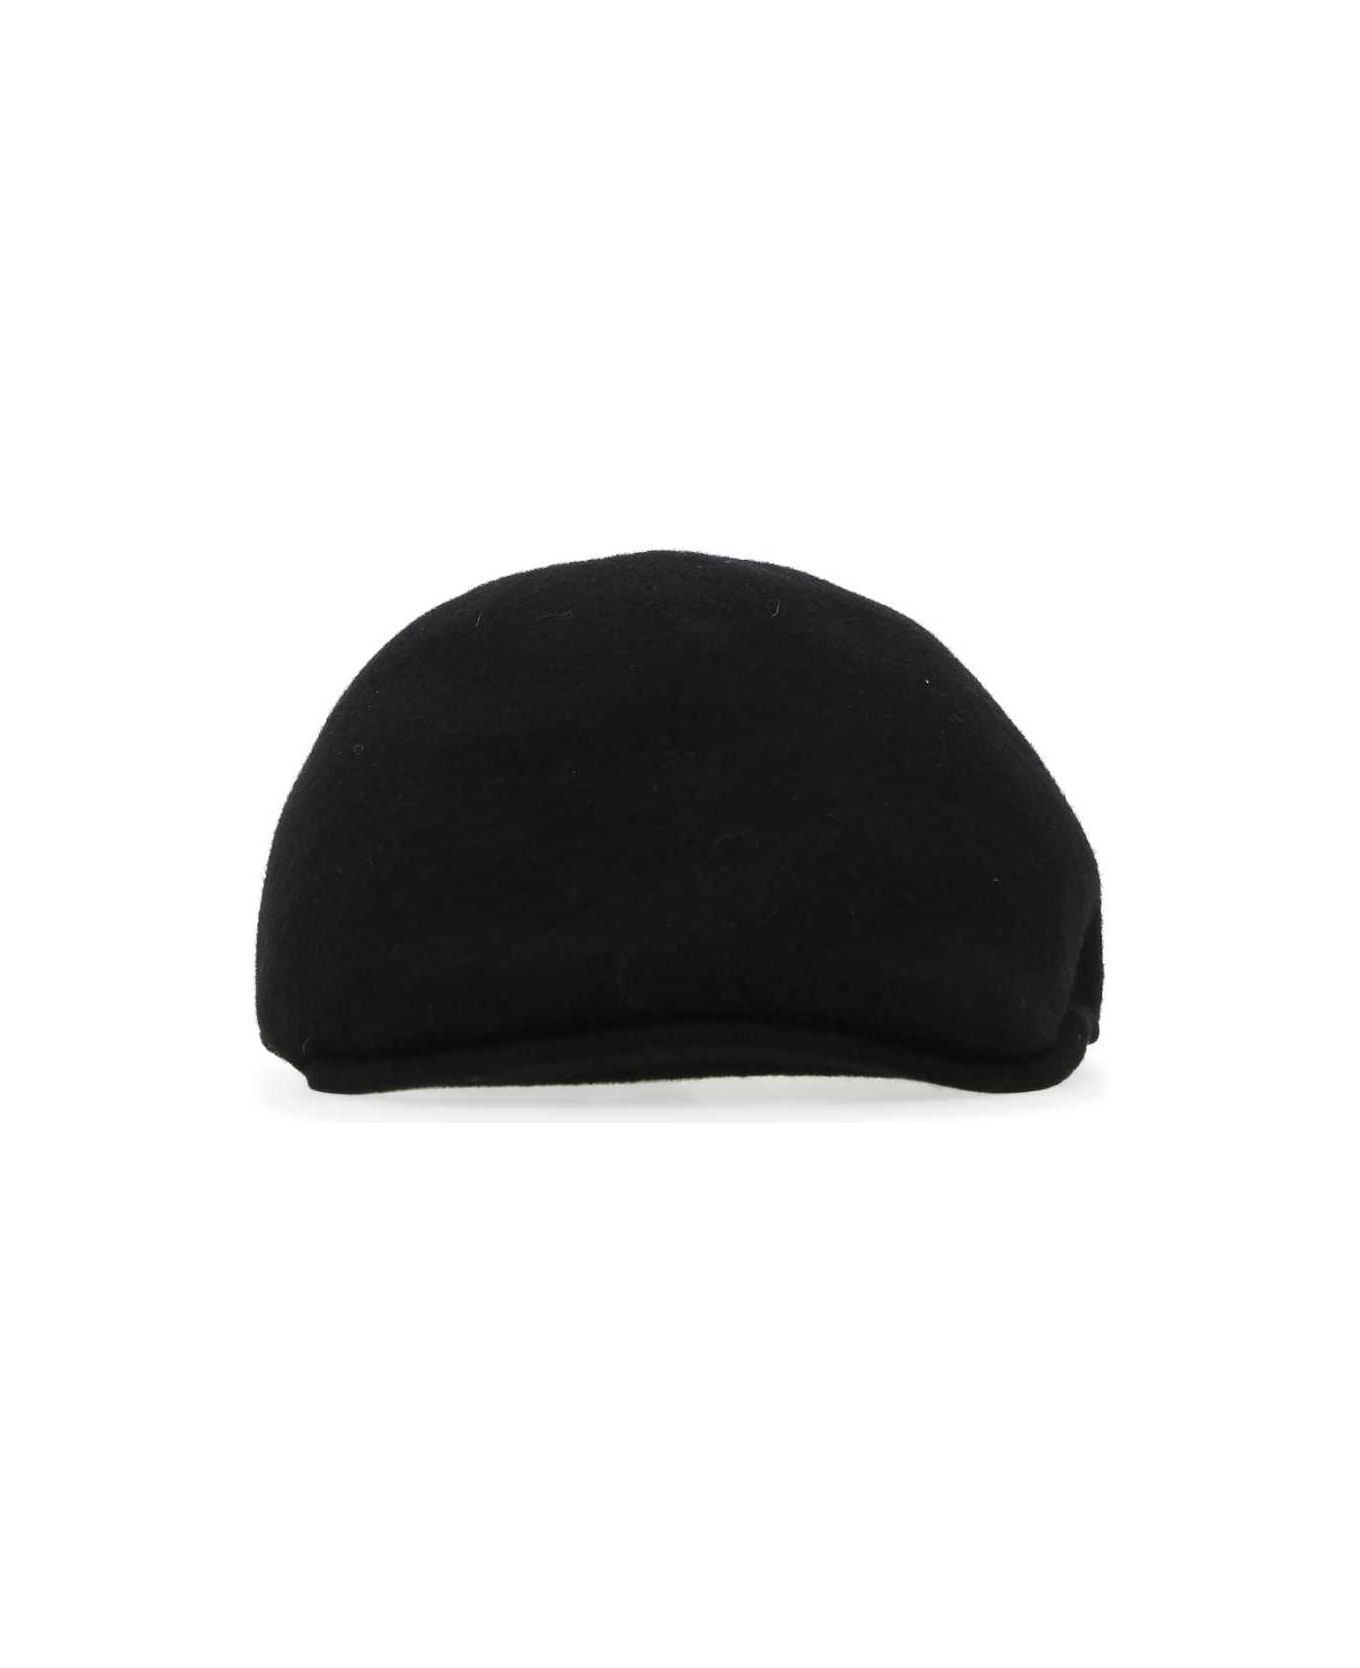 Kangol Black Felt Baker Boy Hat - BK001